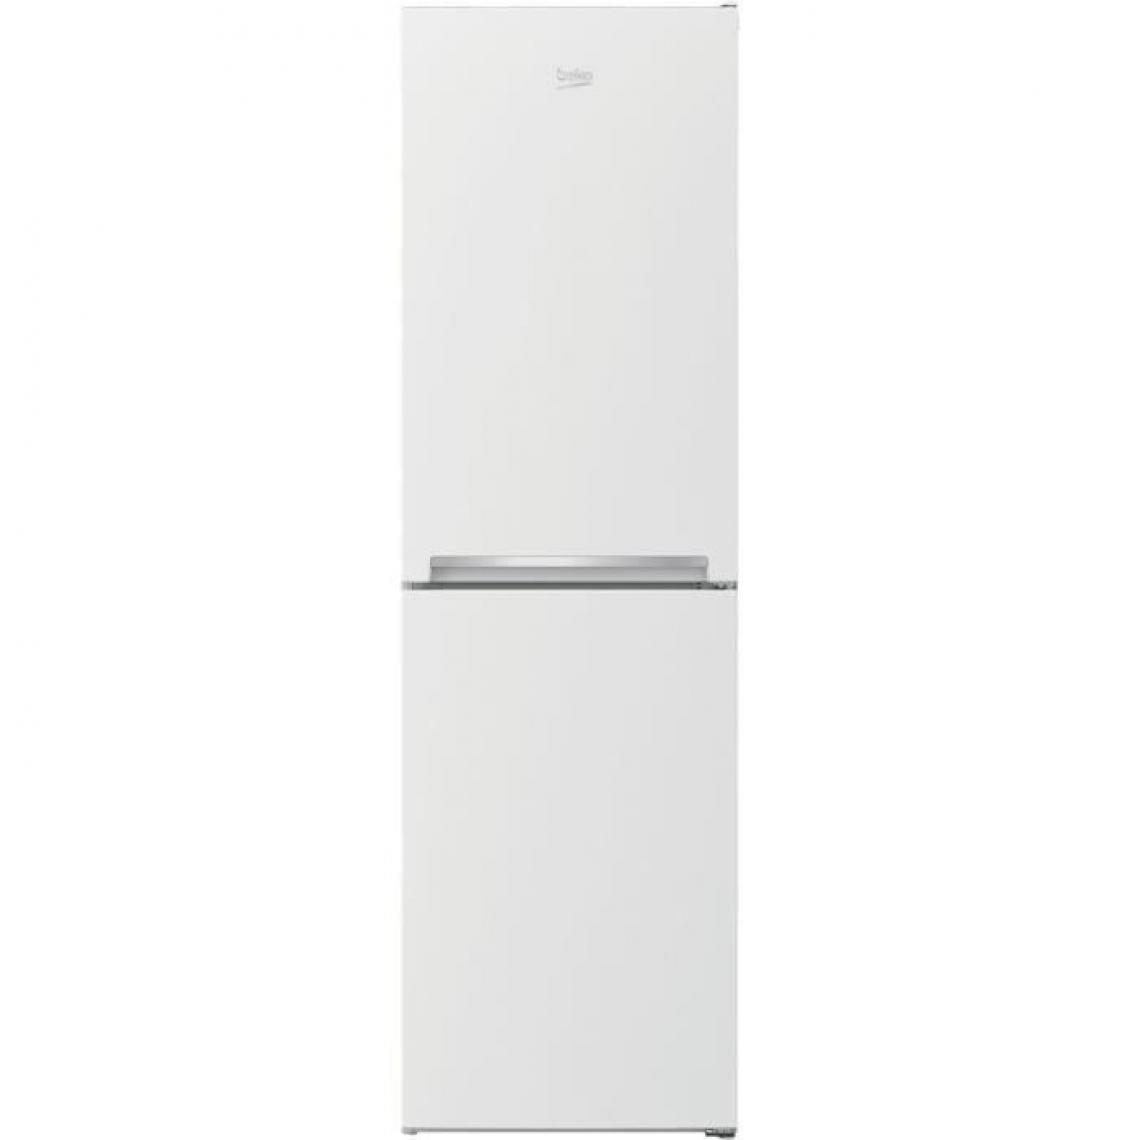 Beko - BEKO RCHE300K30WN - Réfrigérateur combiné pose-libre 270L (168+102L) - Froid ventilé - L54x H182,4cm - Blanc - Réfrigérateur